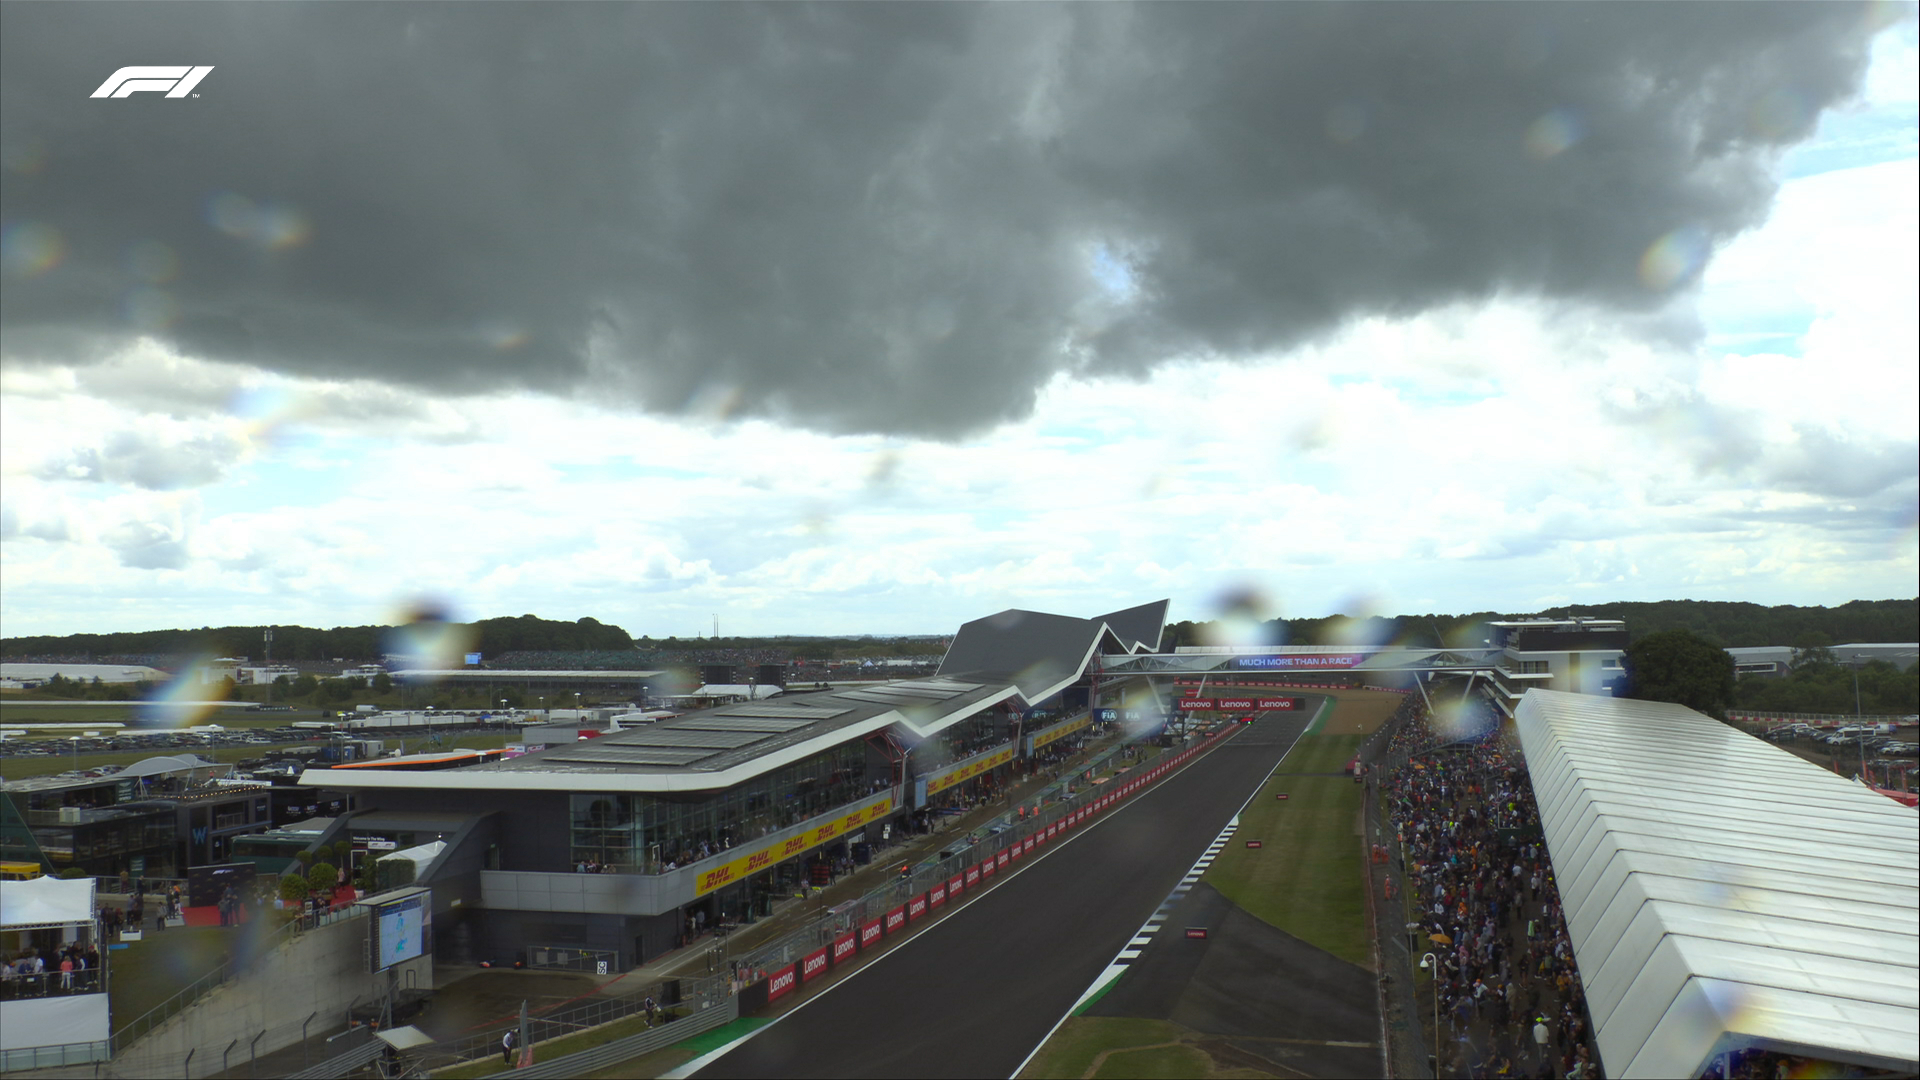 F1 - A Silverstone piove, libere 1 complicate miglior tempo di Bottas